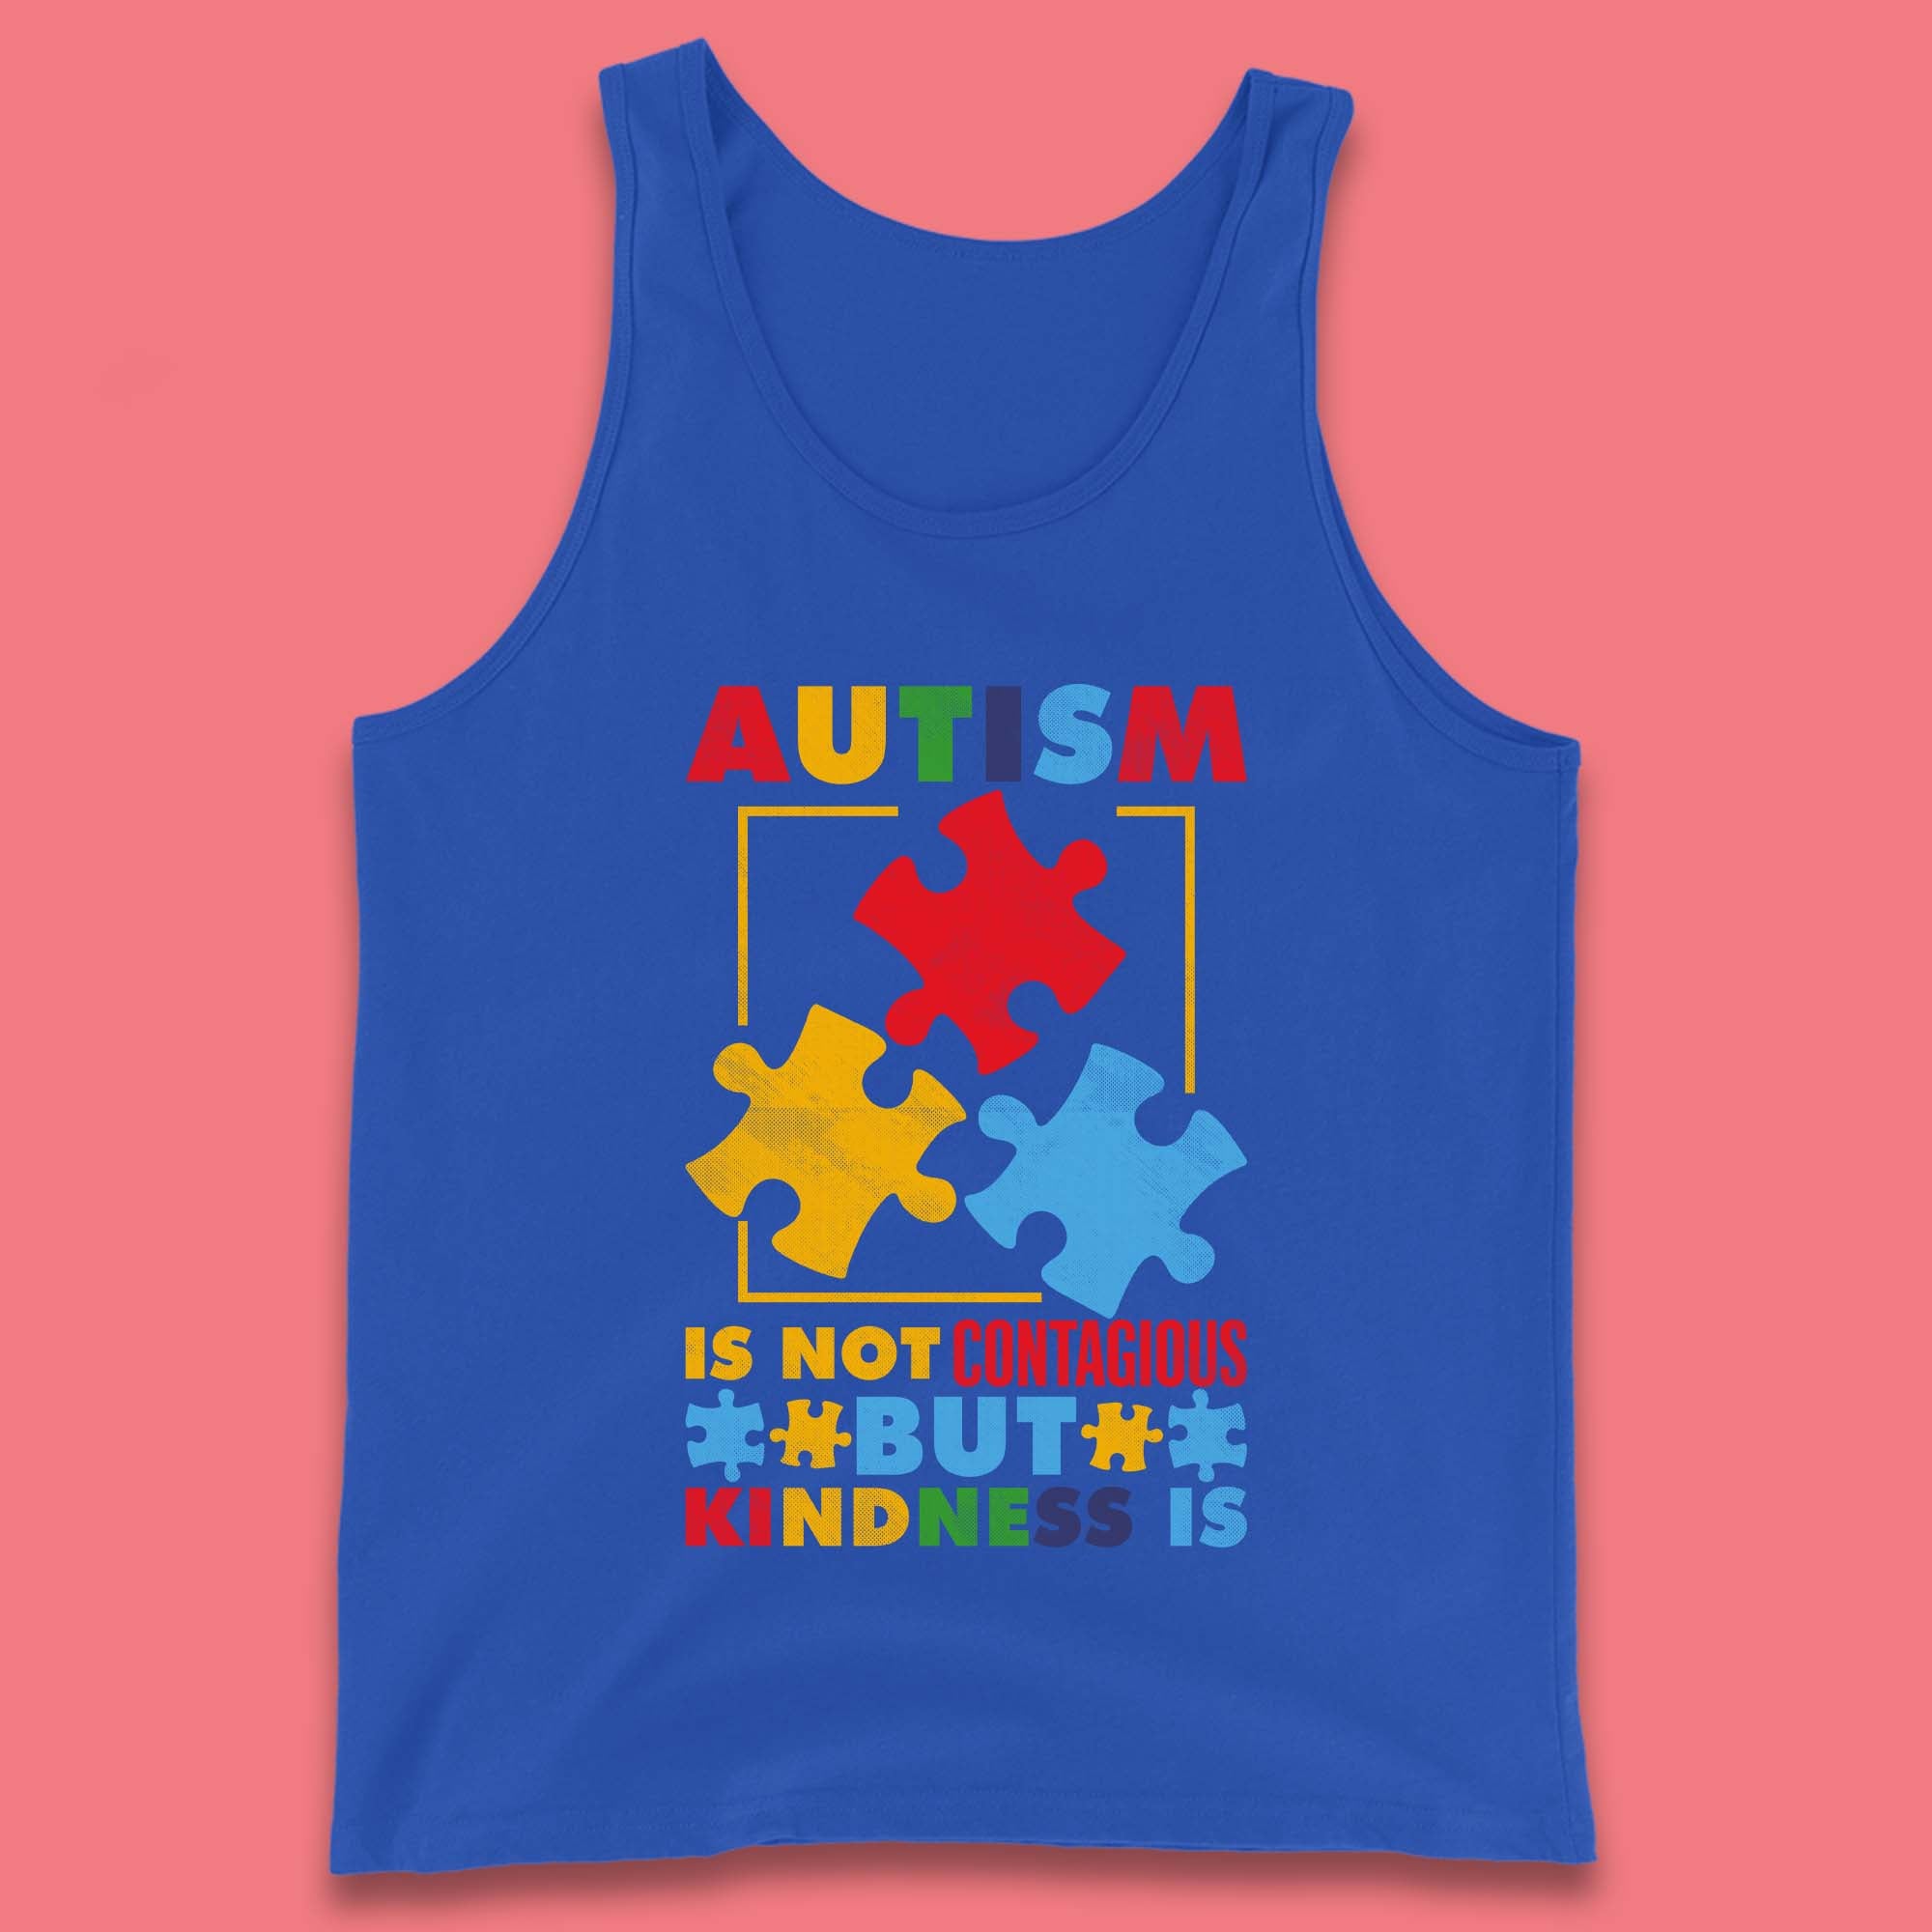 Autism Kindness Tank Top